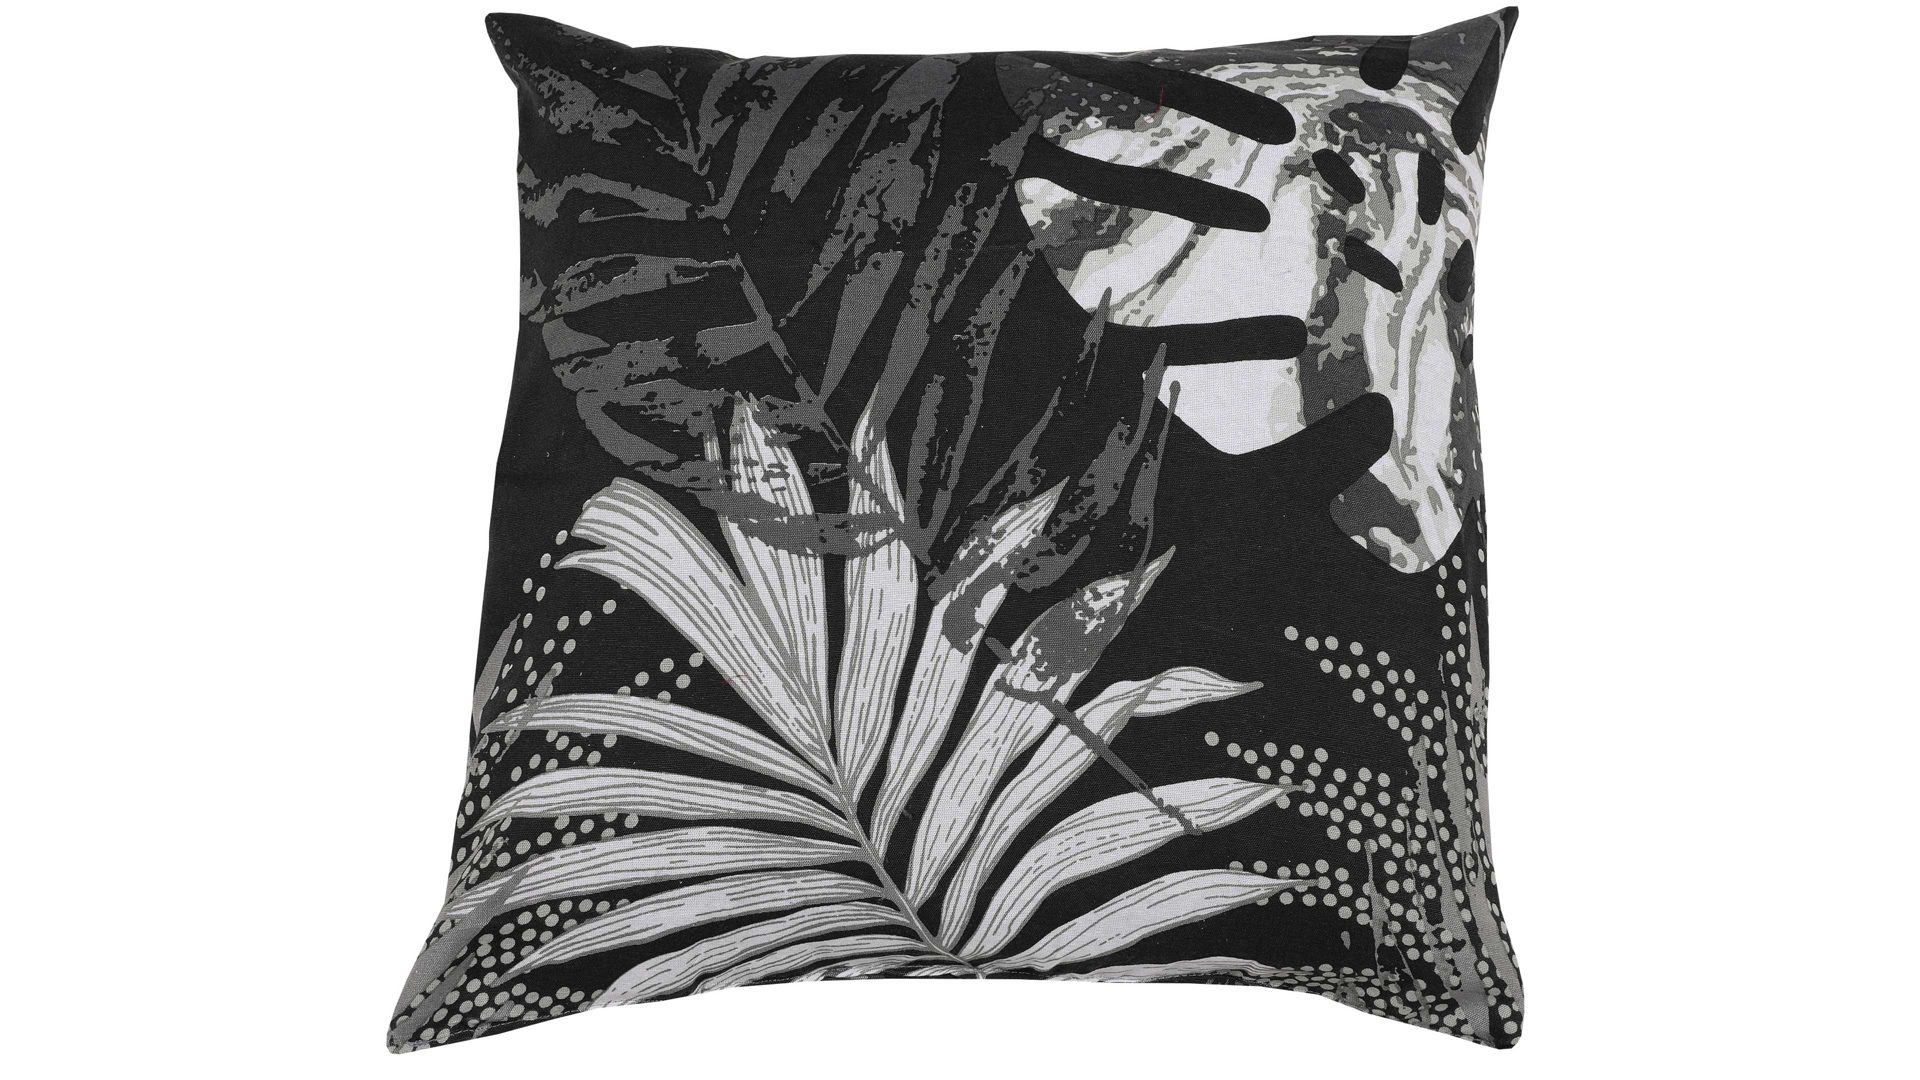 Einzelkissen Go-de textil aus Stoff in Schwarz GO-DE TEXTIL Auflagen Serie 29 - Zierkissen schwarz-weißes Blättermotiv - ca. 48 x 48 cm